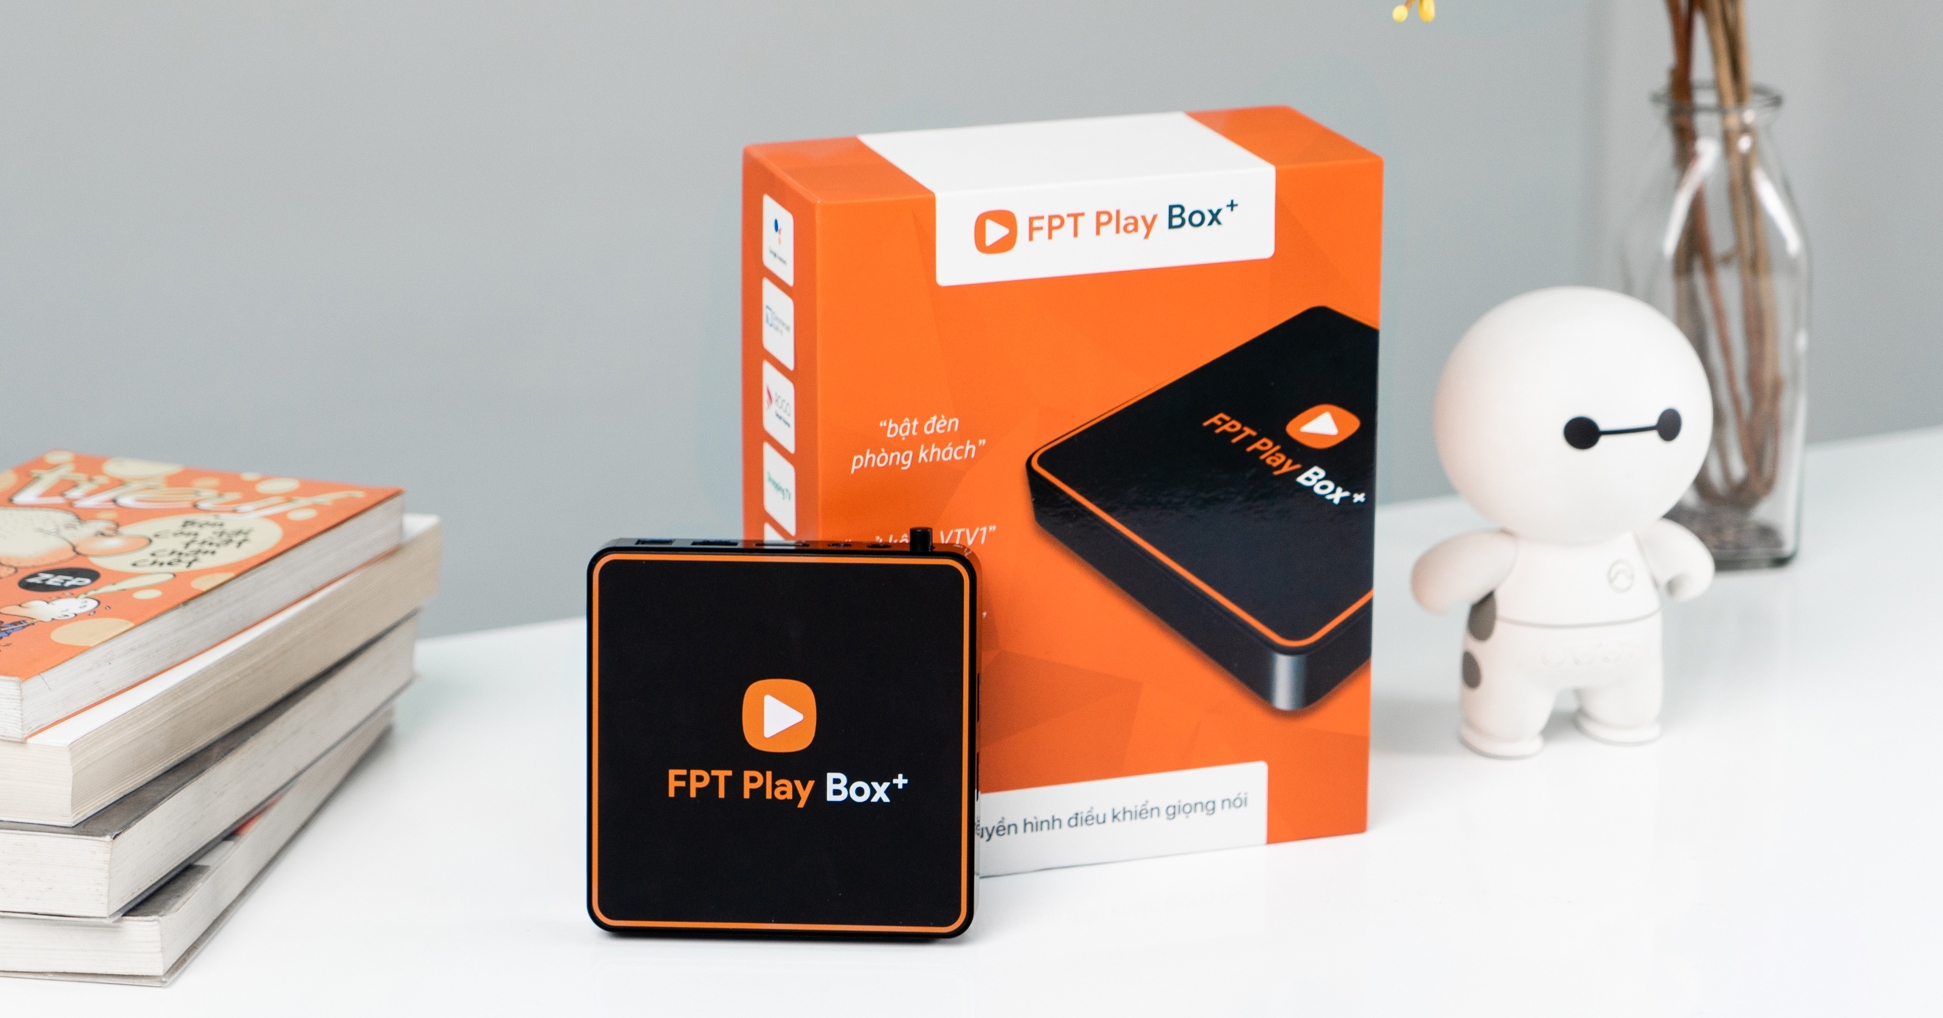 FPT Play Box + 2020 (1GB)